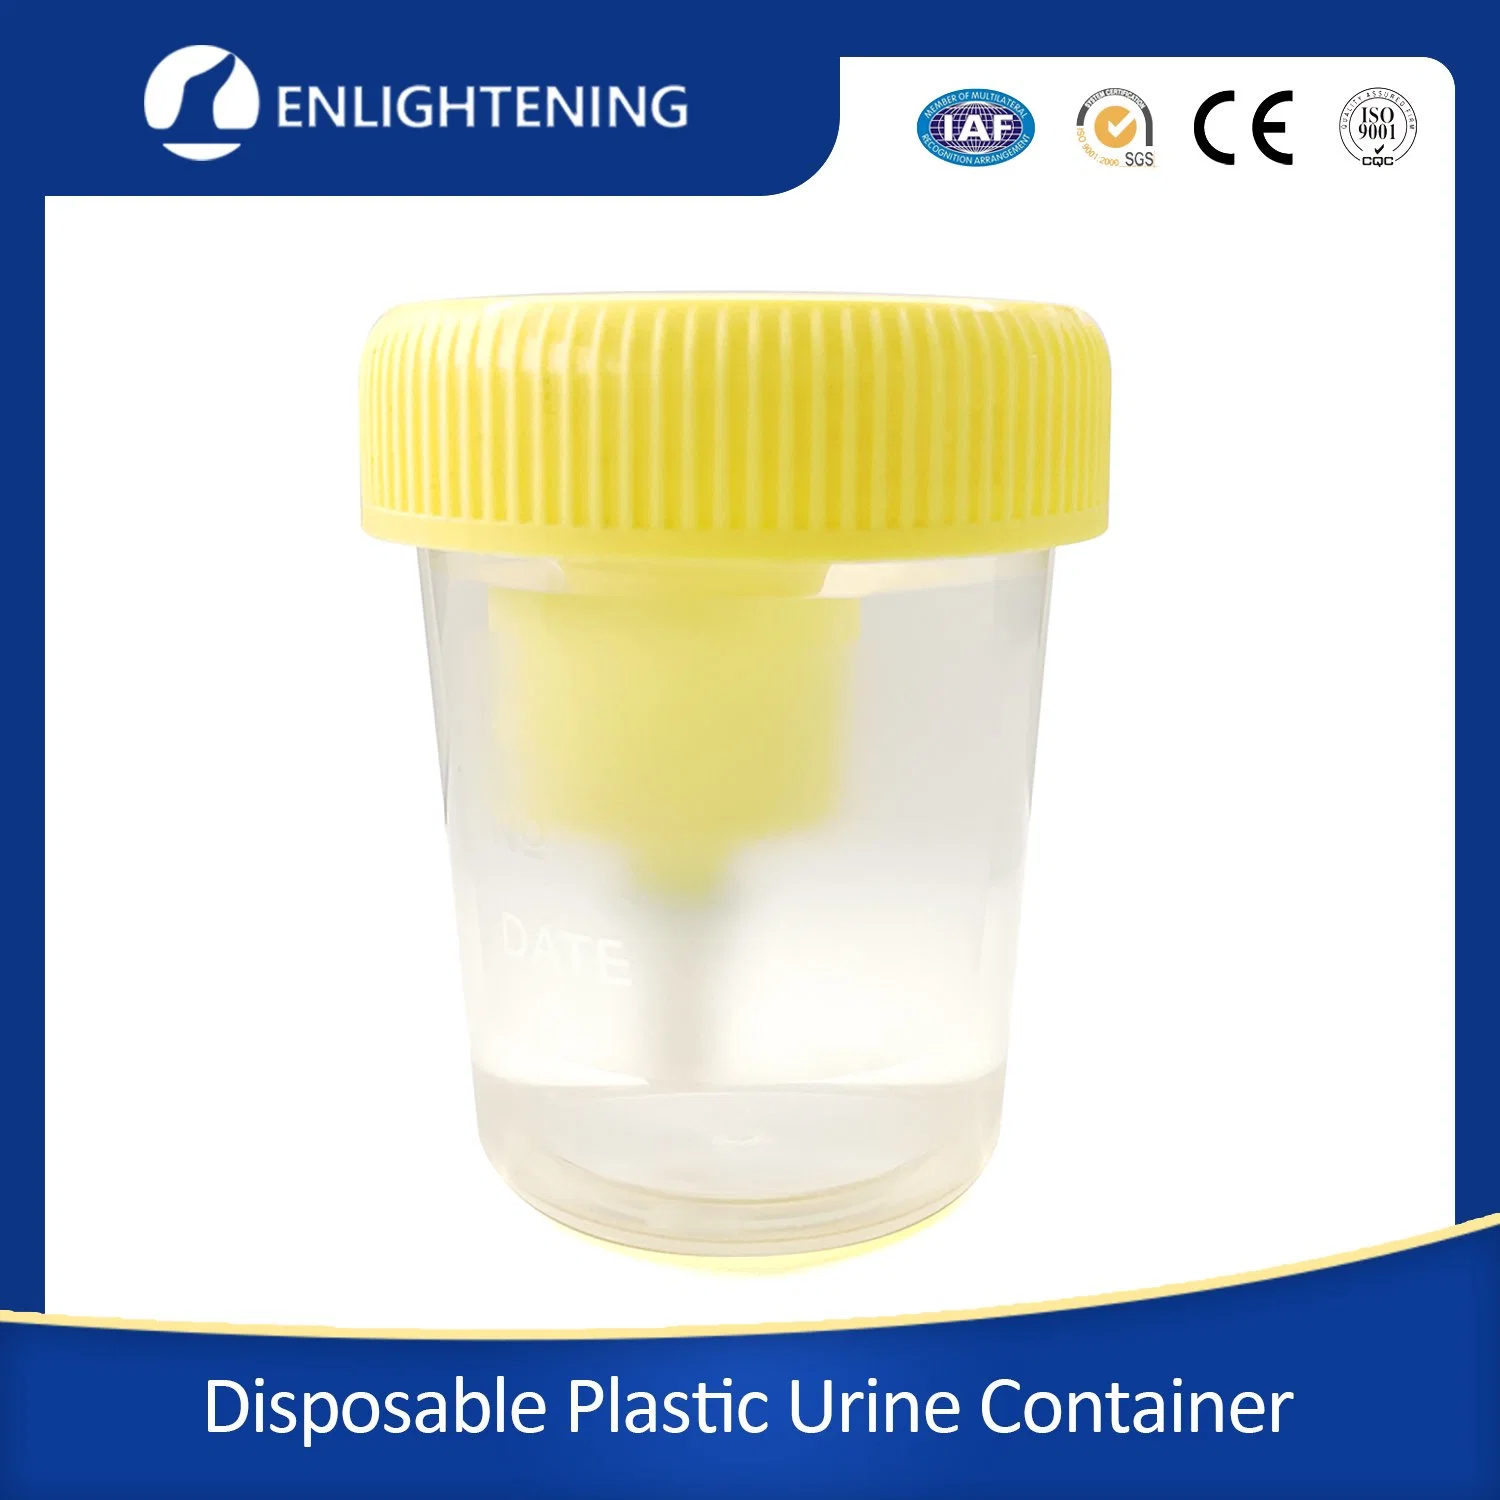 Hochwertiger Steriler Einweg-Kunststoff-Probenbecher Für Medizinische Tests Steril Urinbehälter 30ml Hocker-Behälter